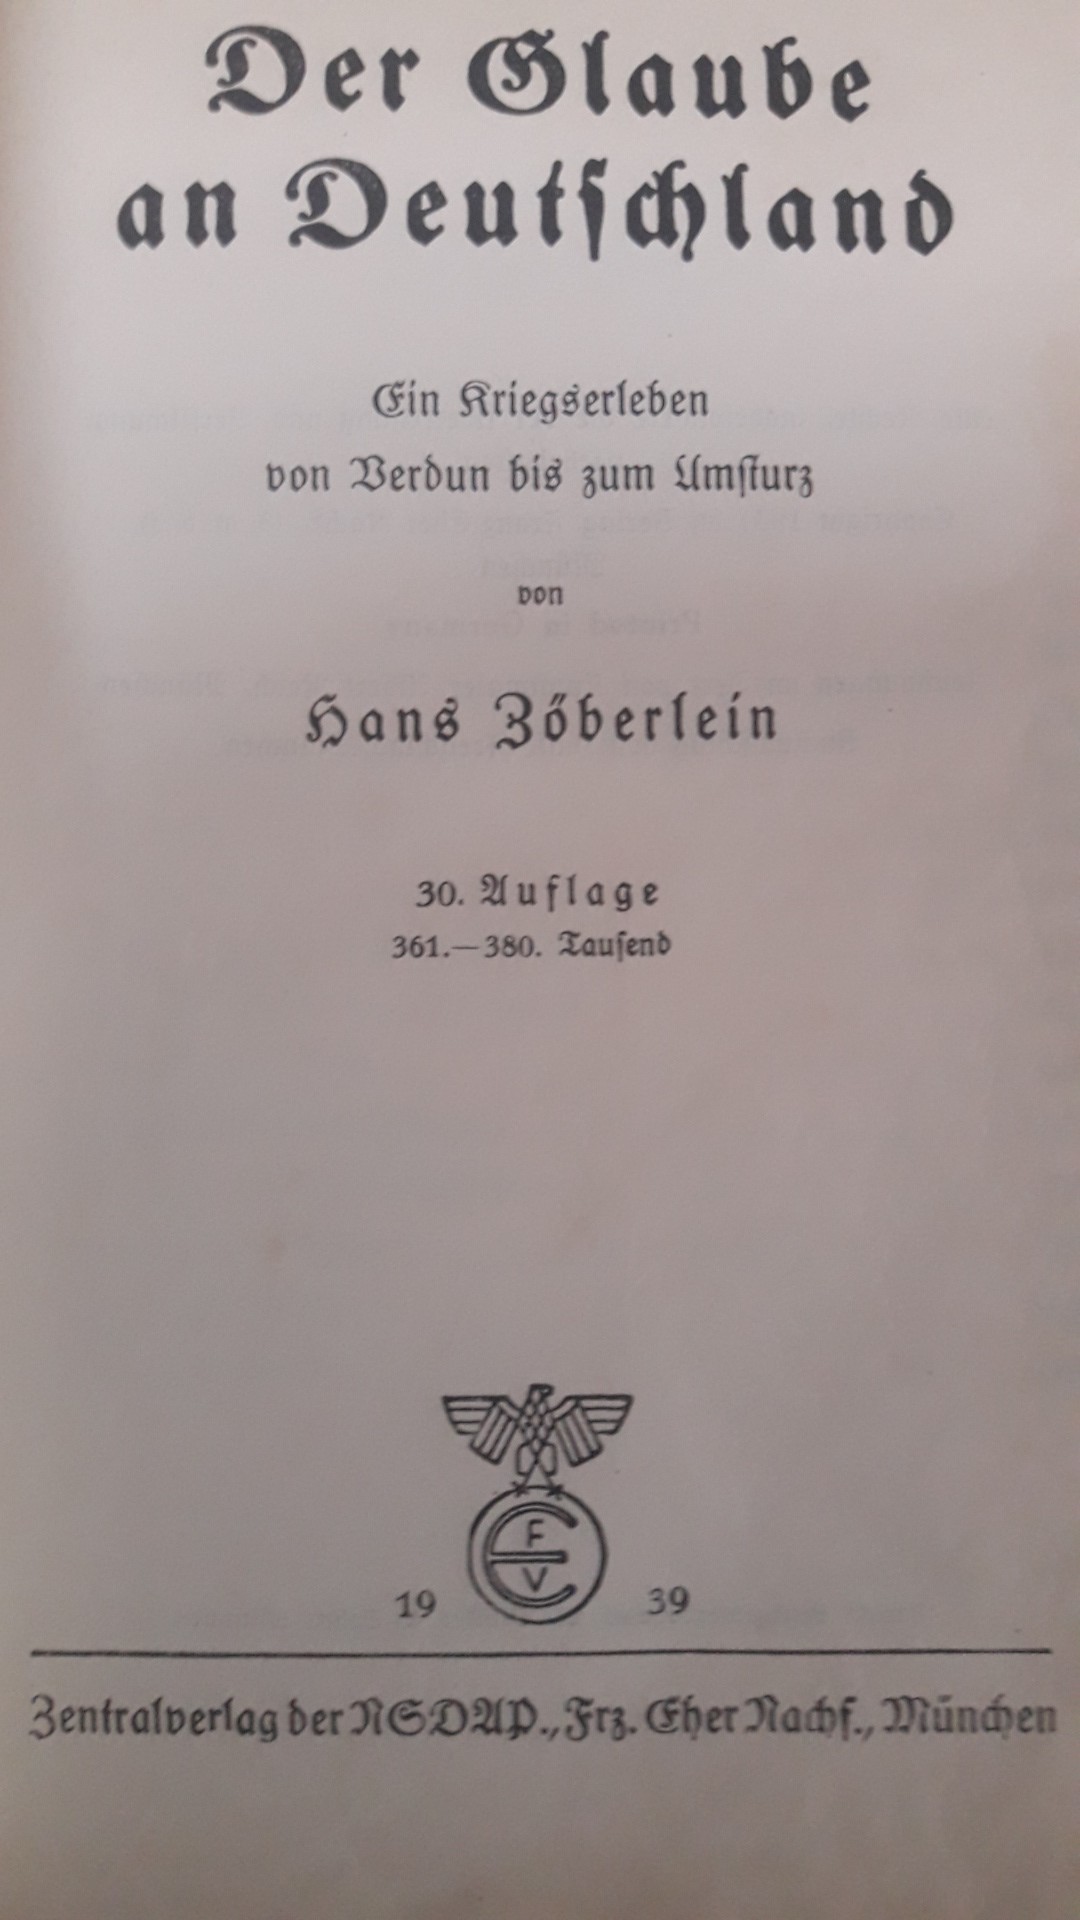 Der Glaube an Deutschland door Hans Zoberlein - 1939 / 890 blz zentralverlag NSDAP